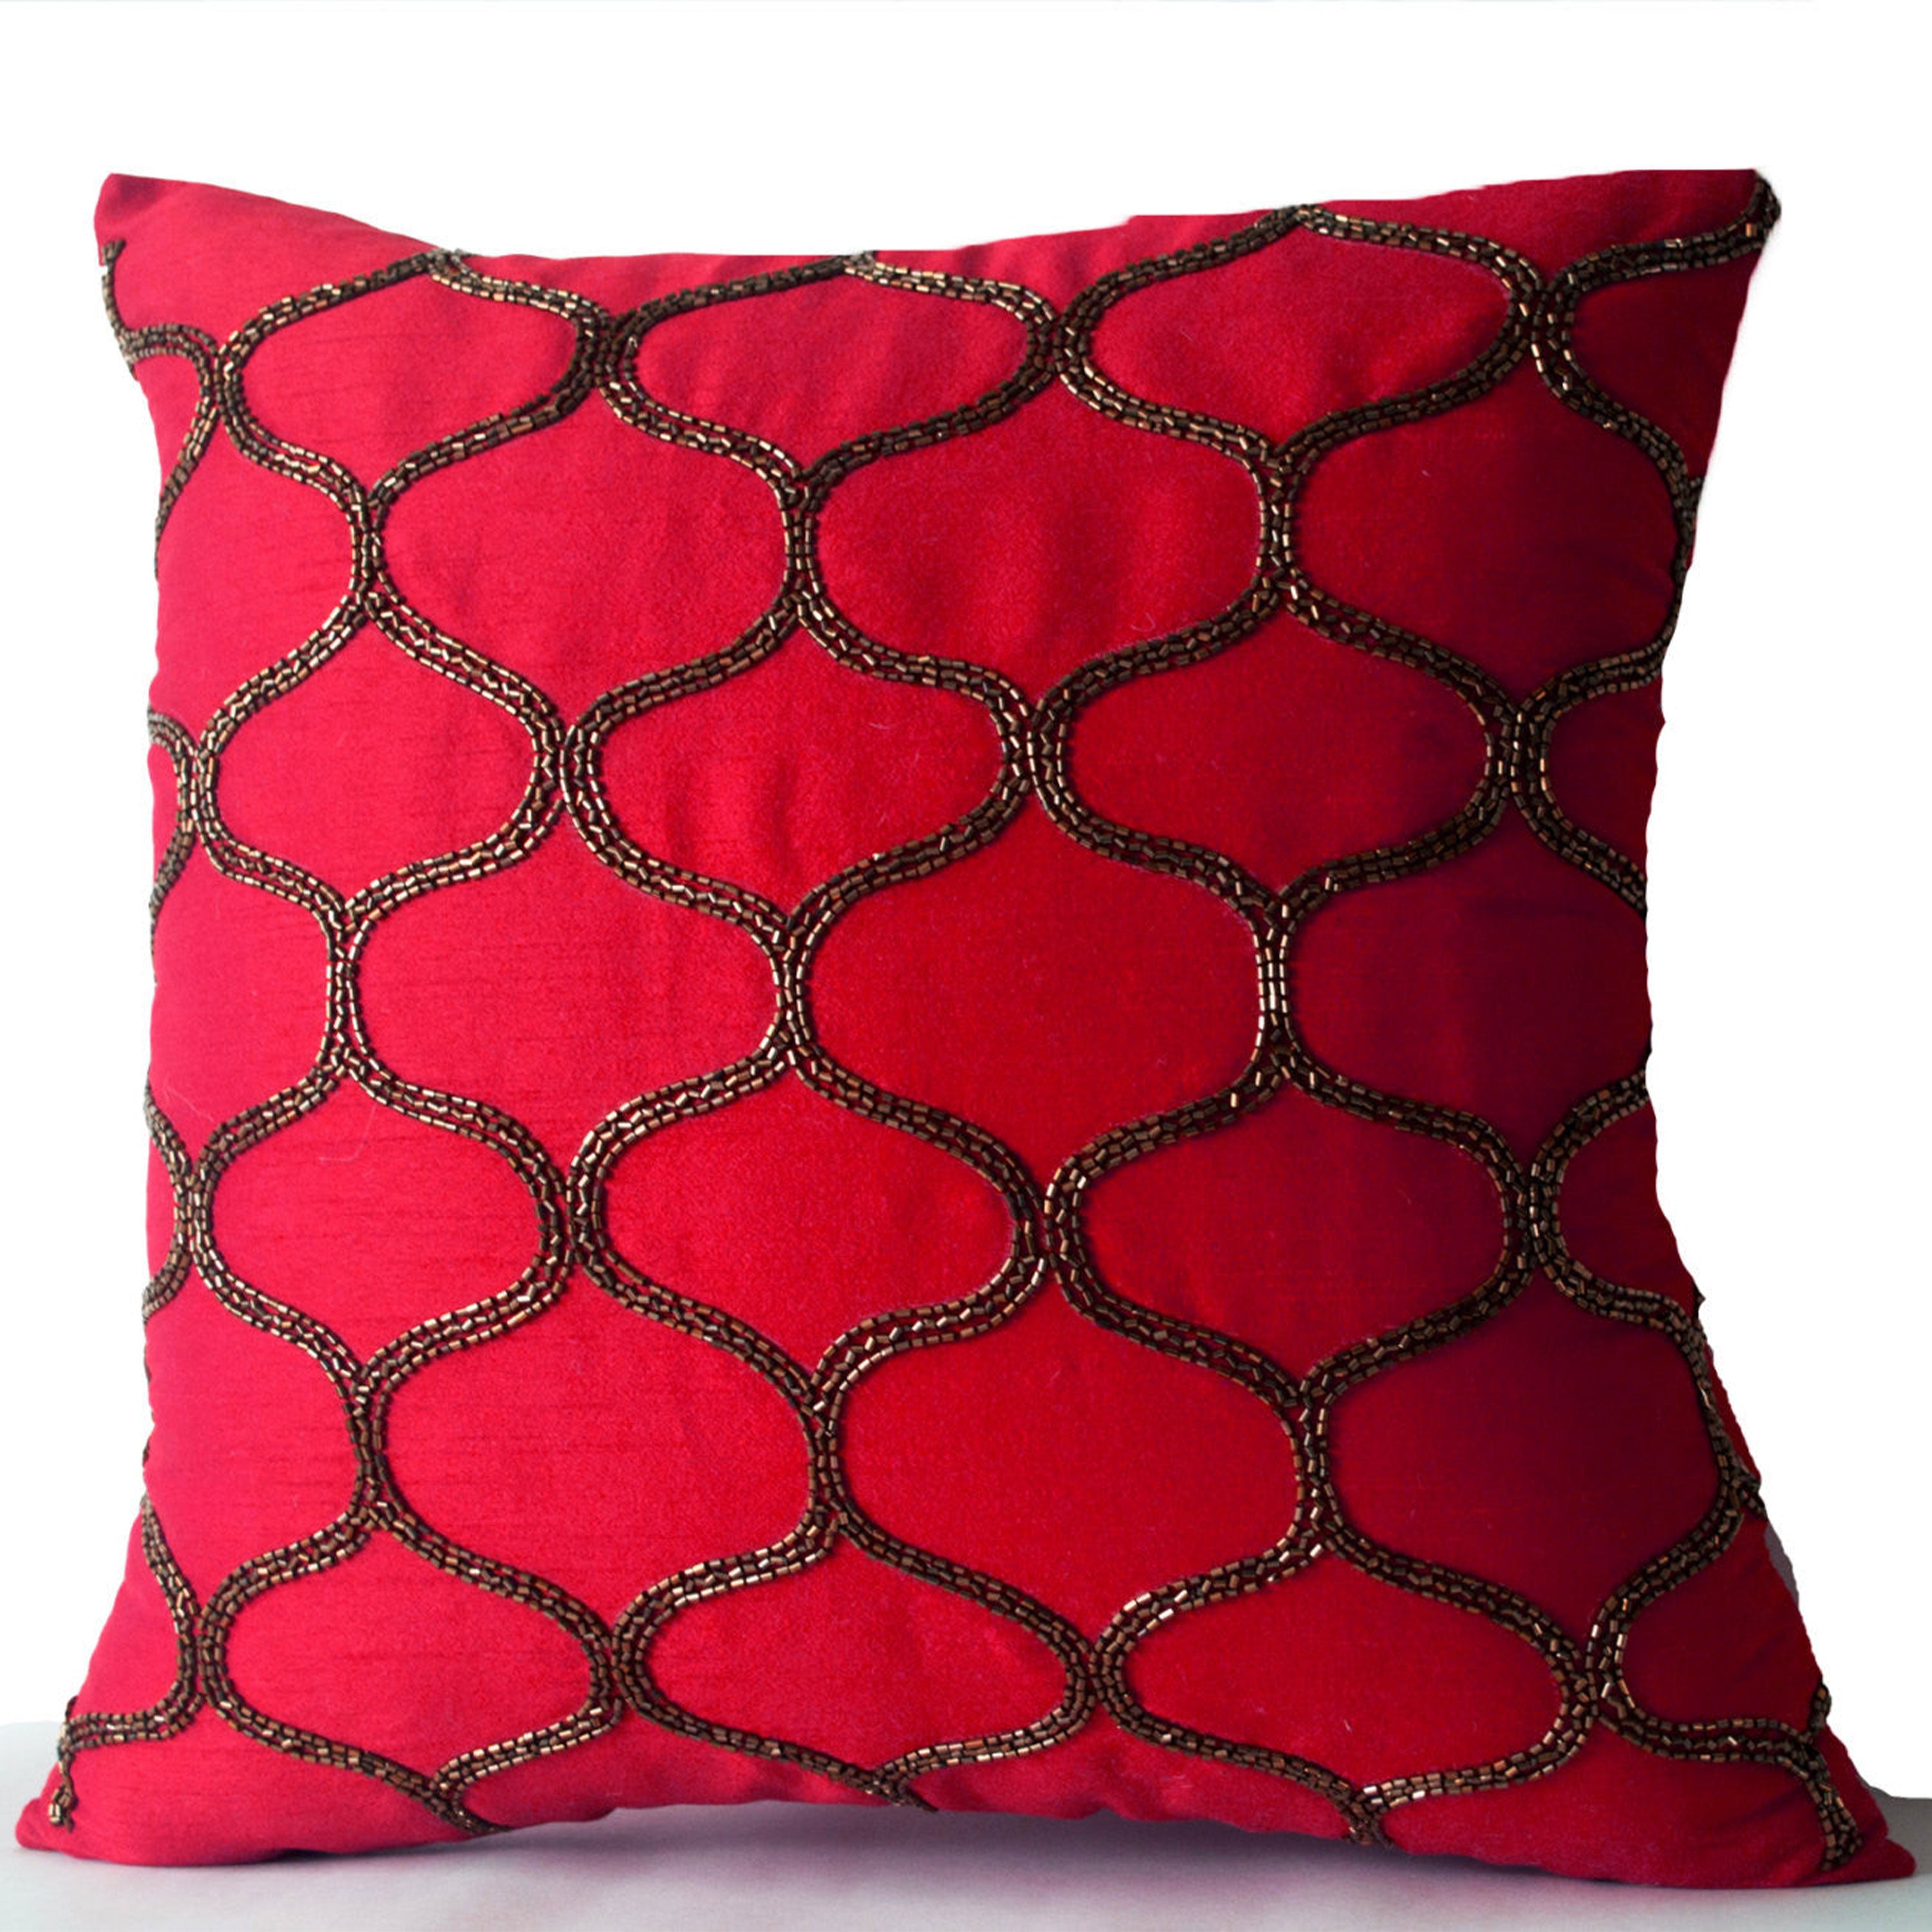 Fuchsia Decorative Pillow -Pink Pillow -Fuchsia Silk Pillow -Pink Brown Gold Beaded Pillow Covers -Sequin Pillows -16x16 -Gift -Autumn Decor